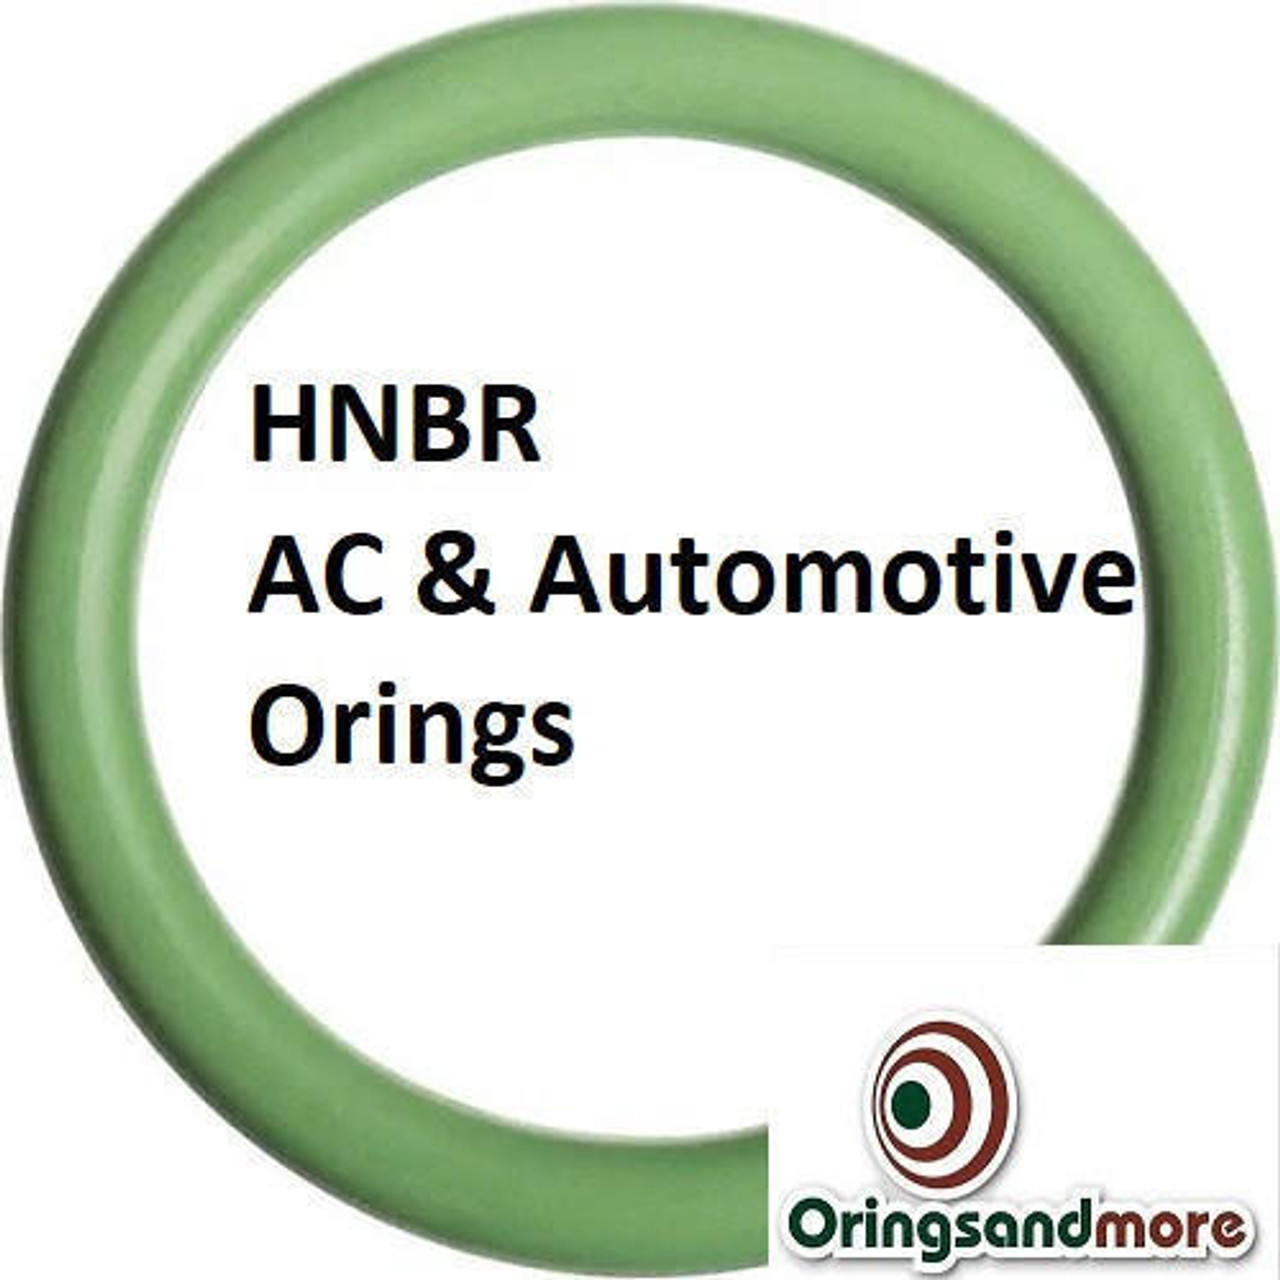 HNBR Orings  # 146-70D Green Minimum 3 pcs